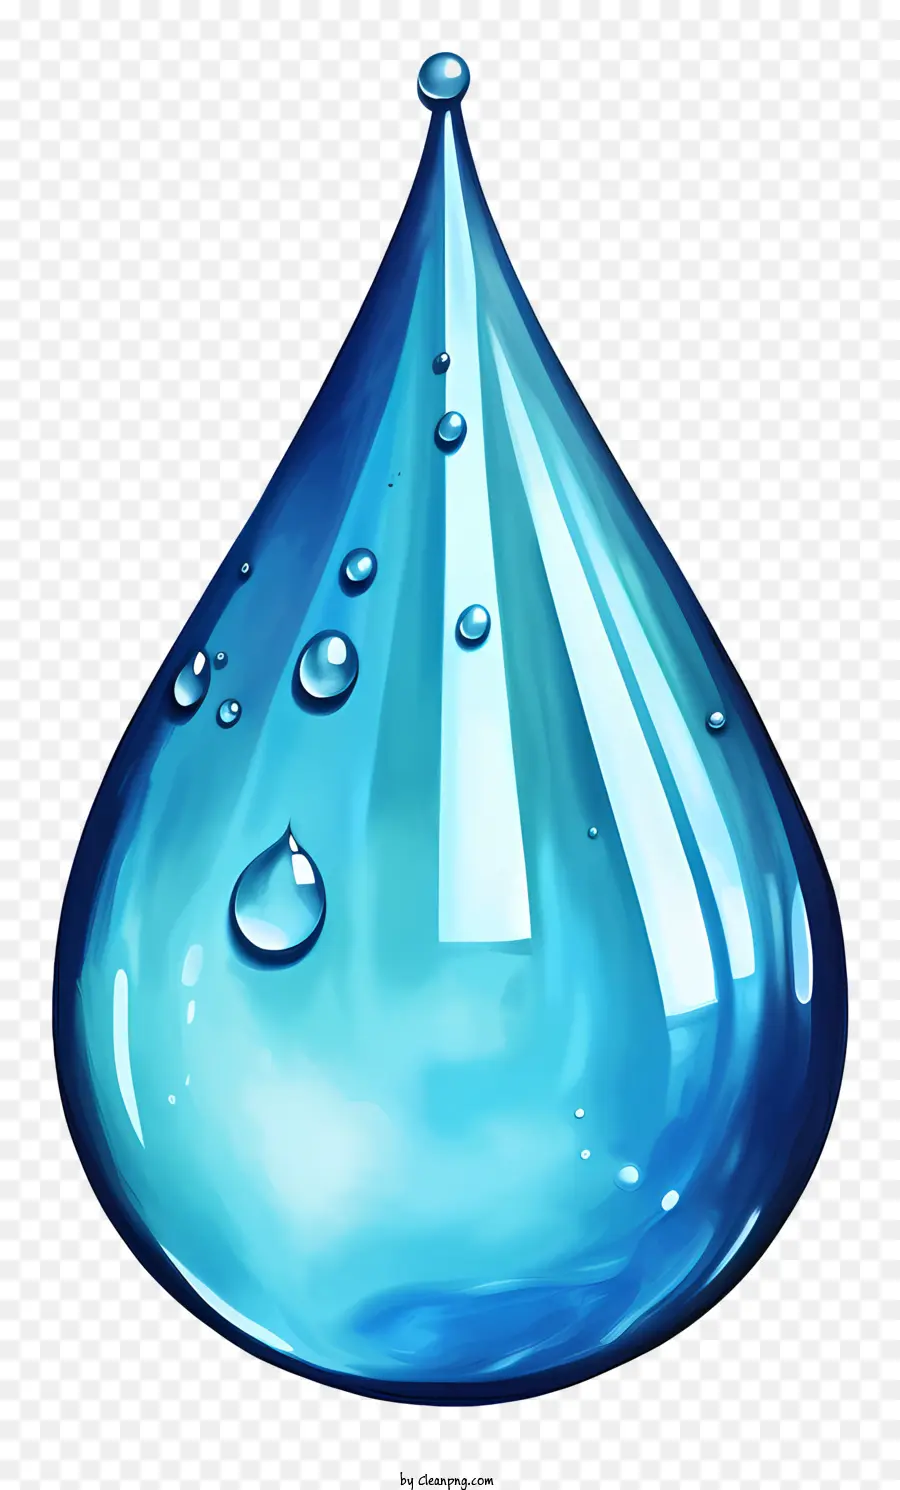 goccia d'acqua - Una caduta d'acqua trasparente si diffonde lentamente verso il basso